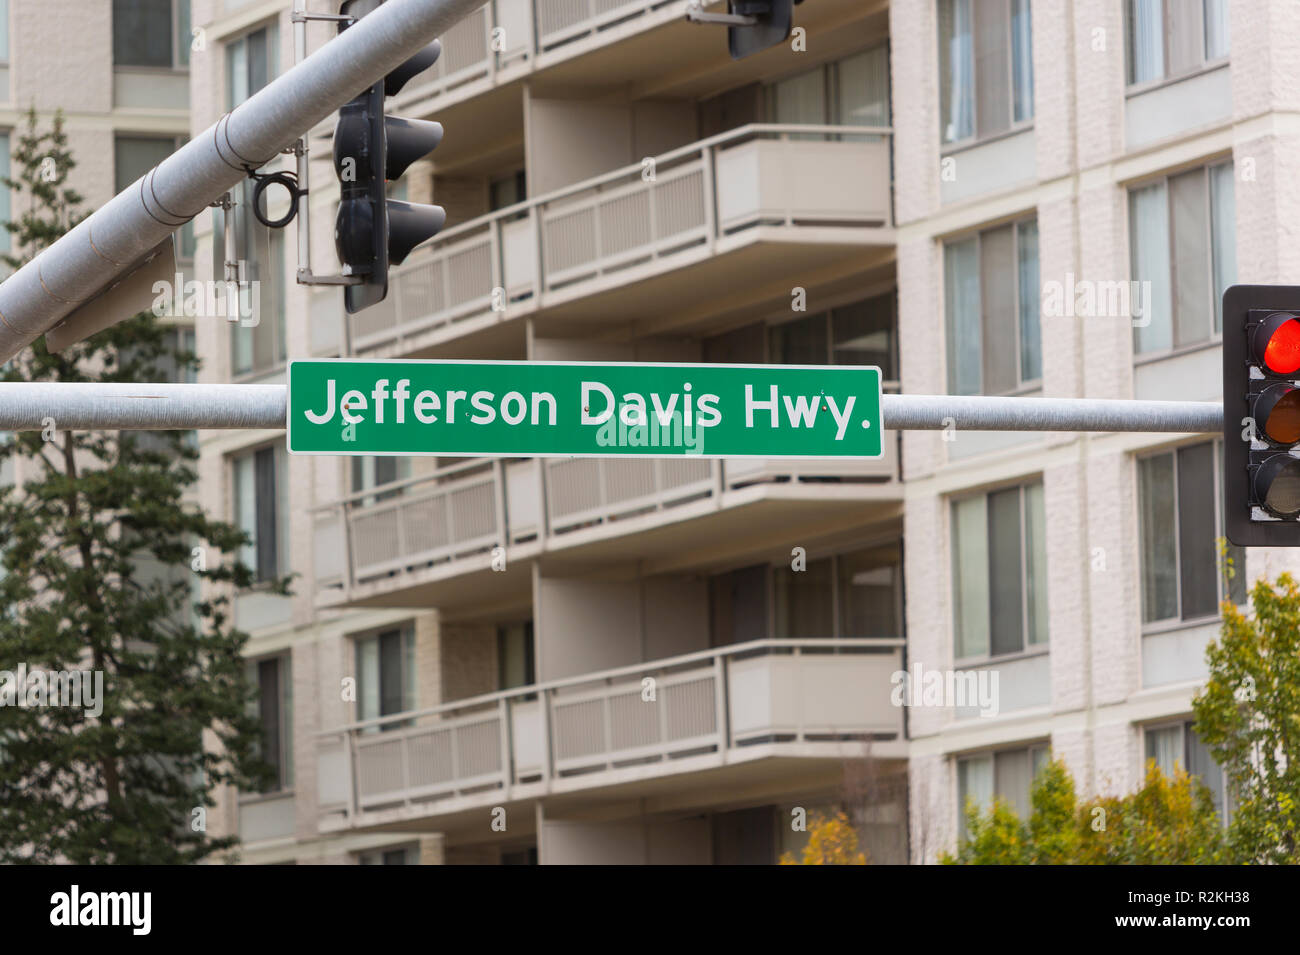 CRYSTAL CITY, Virginia, EE.UU. - Jefferson Davis Highway firmar en Crystal City, ubicación de Amazon HQ2 en el Condado de Arlington. Foto de stock